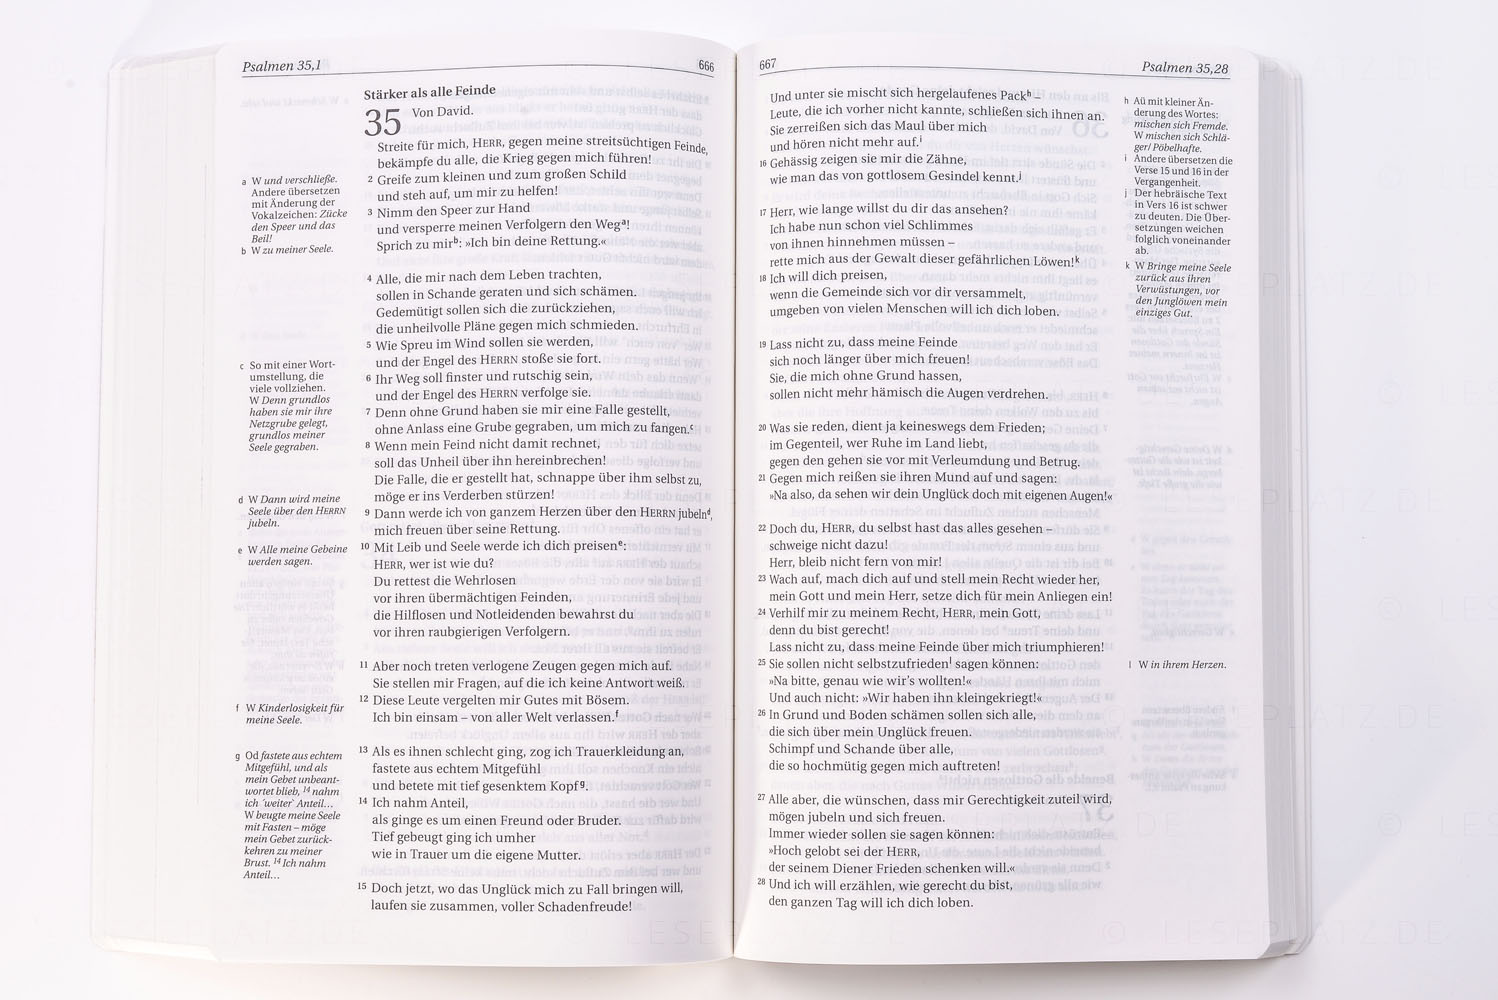 NGÜ - Neues Testament mit Psalmen und Sprichwörter